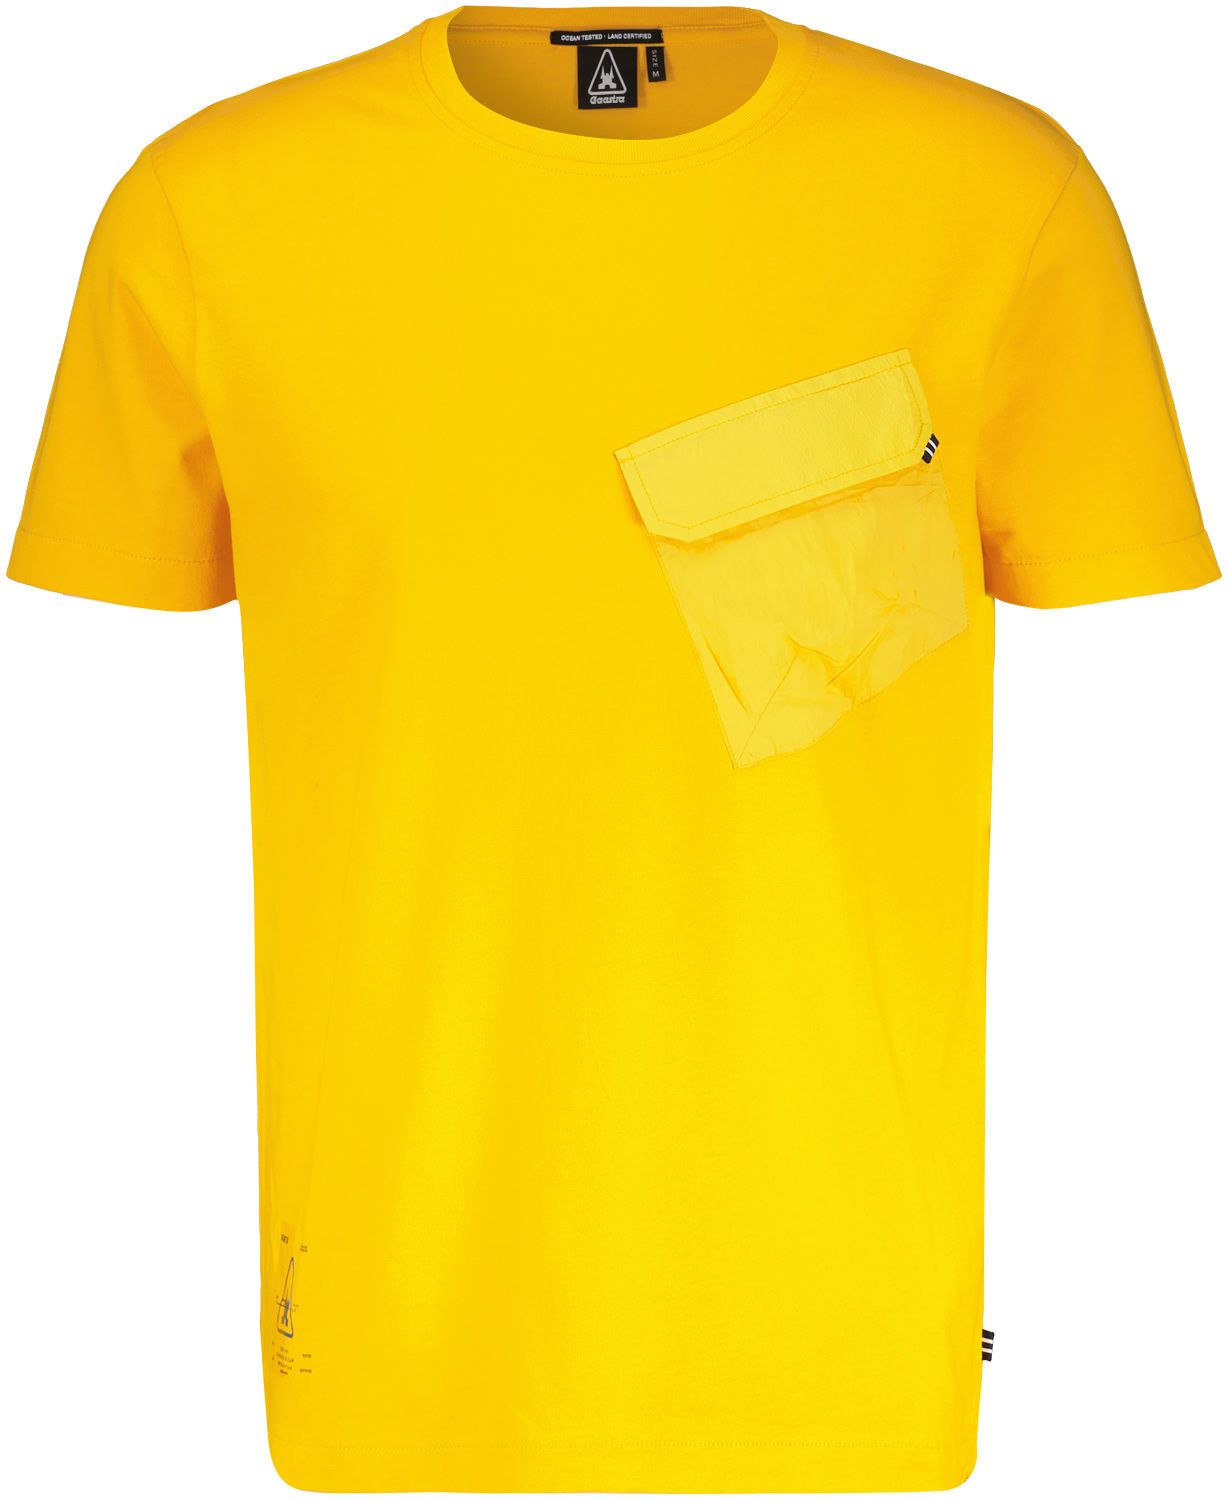 Gaastra T-shirt Geel